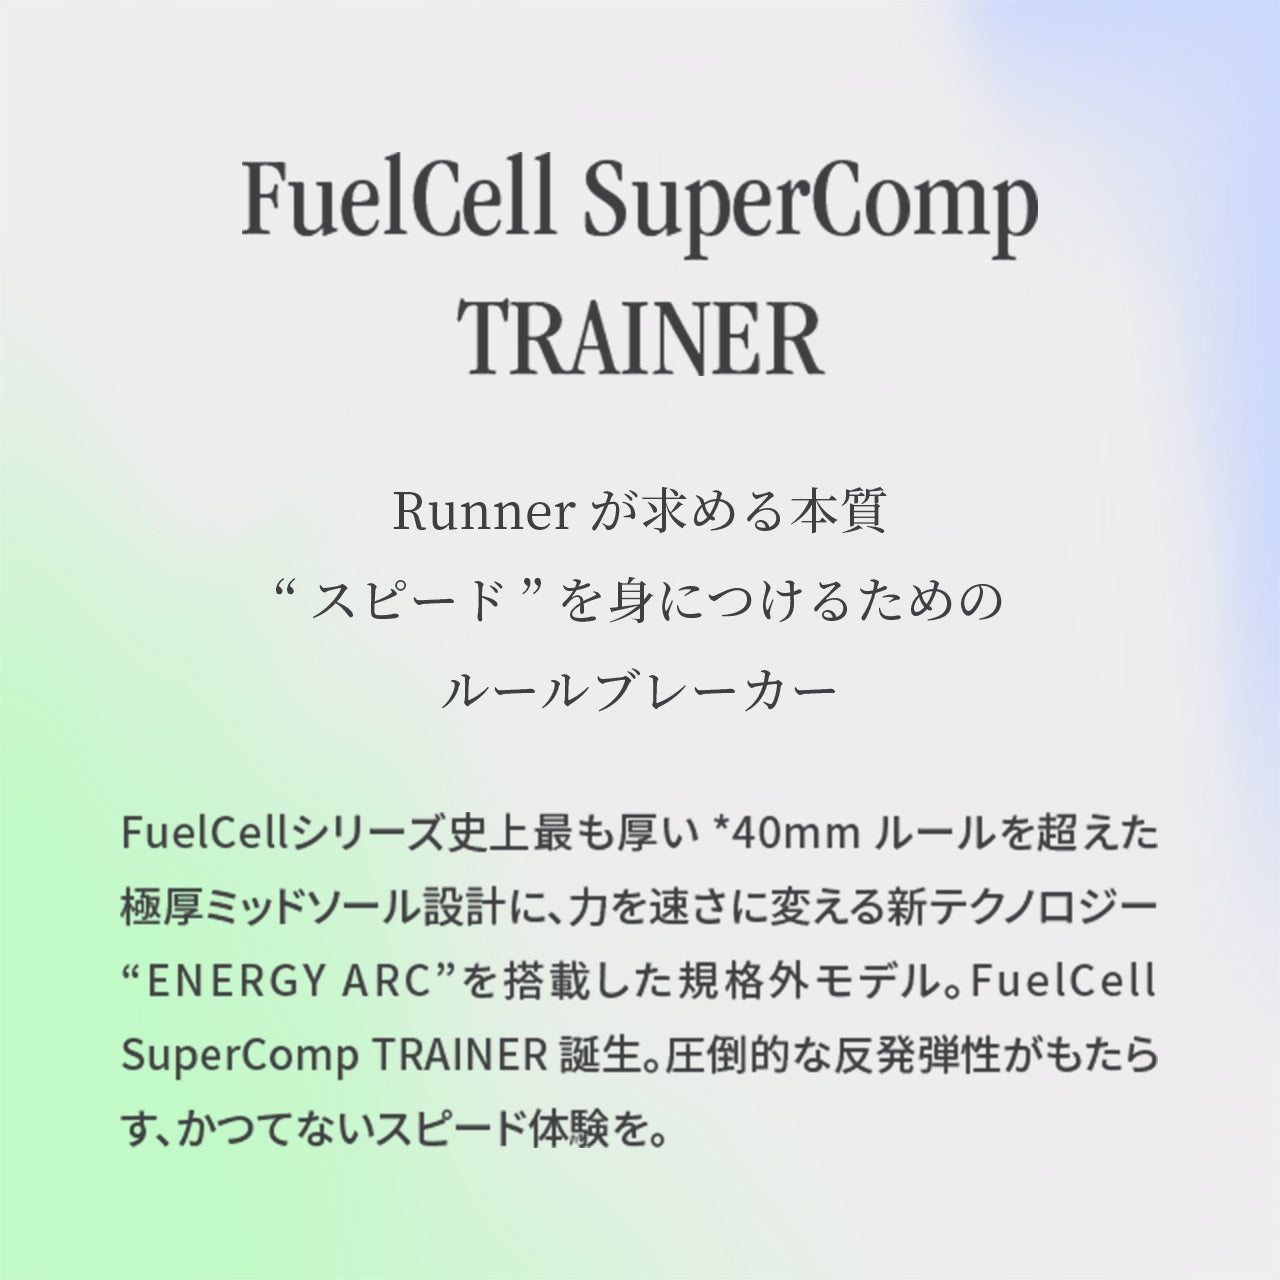 FuelCell SuperComp Trainer Runnerが求める本質“スピード” を身につけるためのルールブレーカー FuelCellシリーズ史上最も厚い *40mm ルールを超えた極厚ミッドソール設計に、力を速さに変える新テクノロジー “ENERGY ARC”を搭載した規格外モデル。FuelCell SuperComp TRAINER 誕生。圧倒的な反発弾性がもたらす、かつてないスピード体験を。